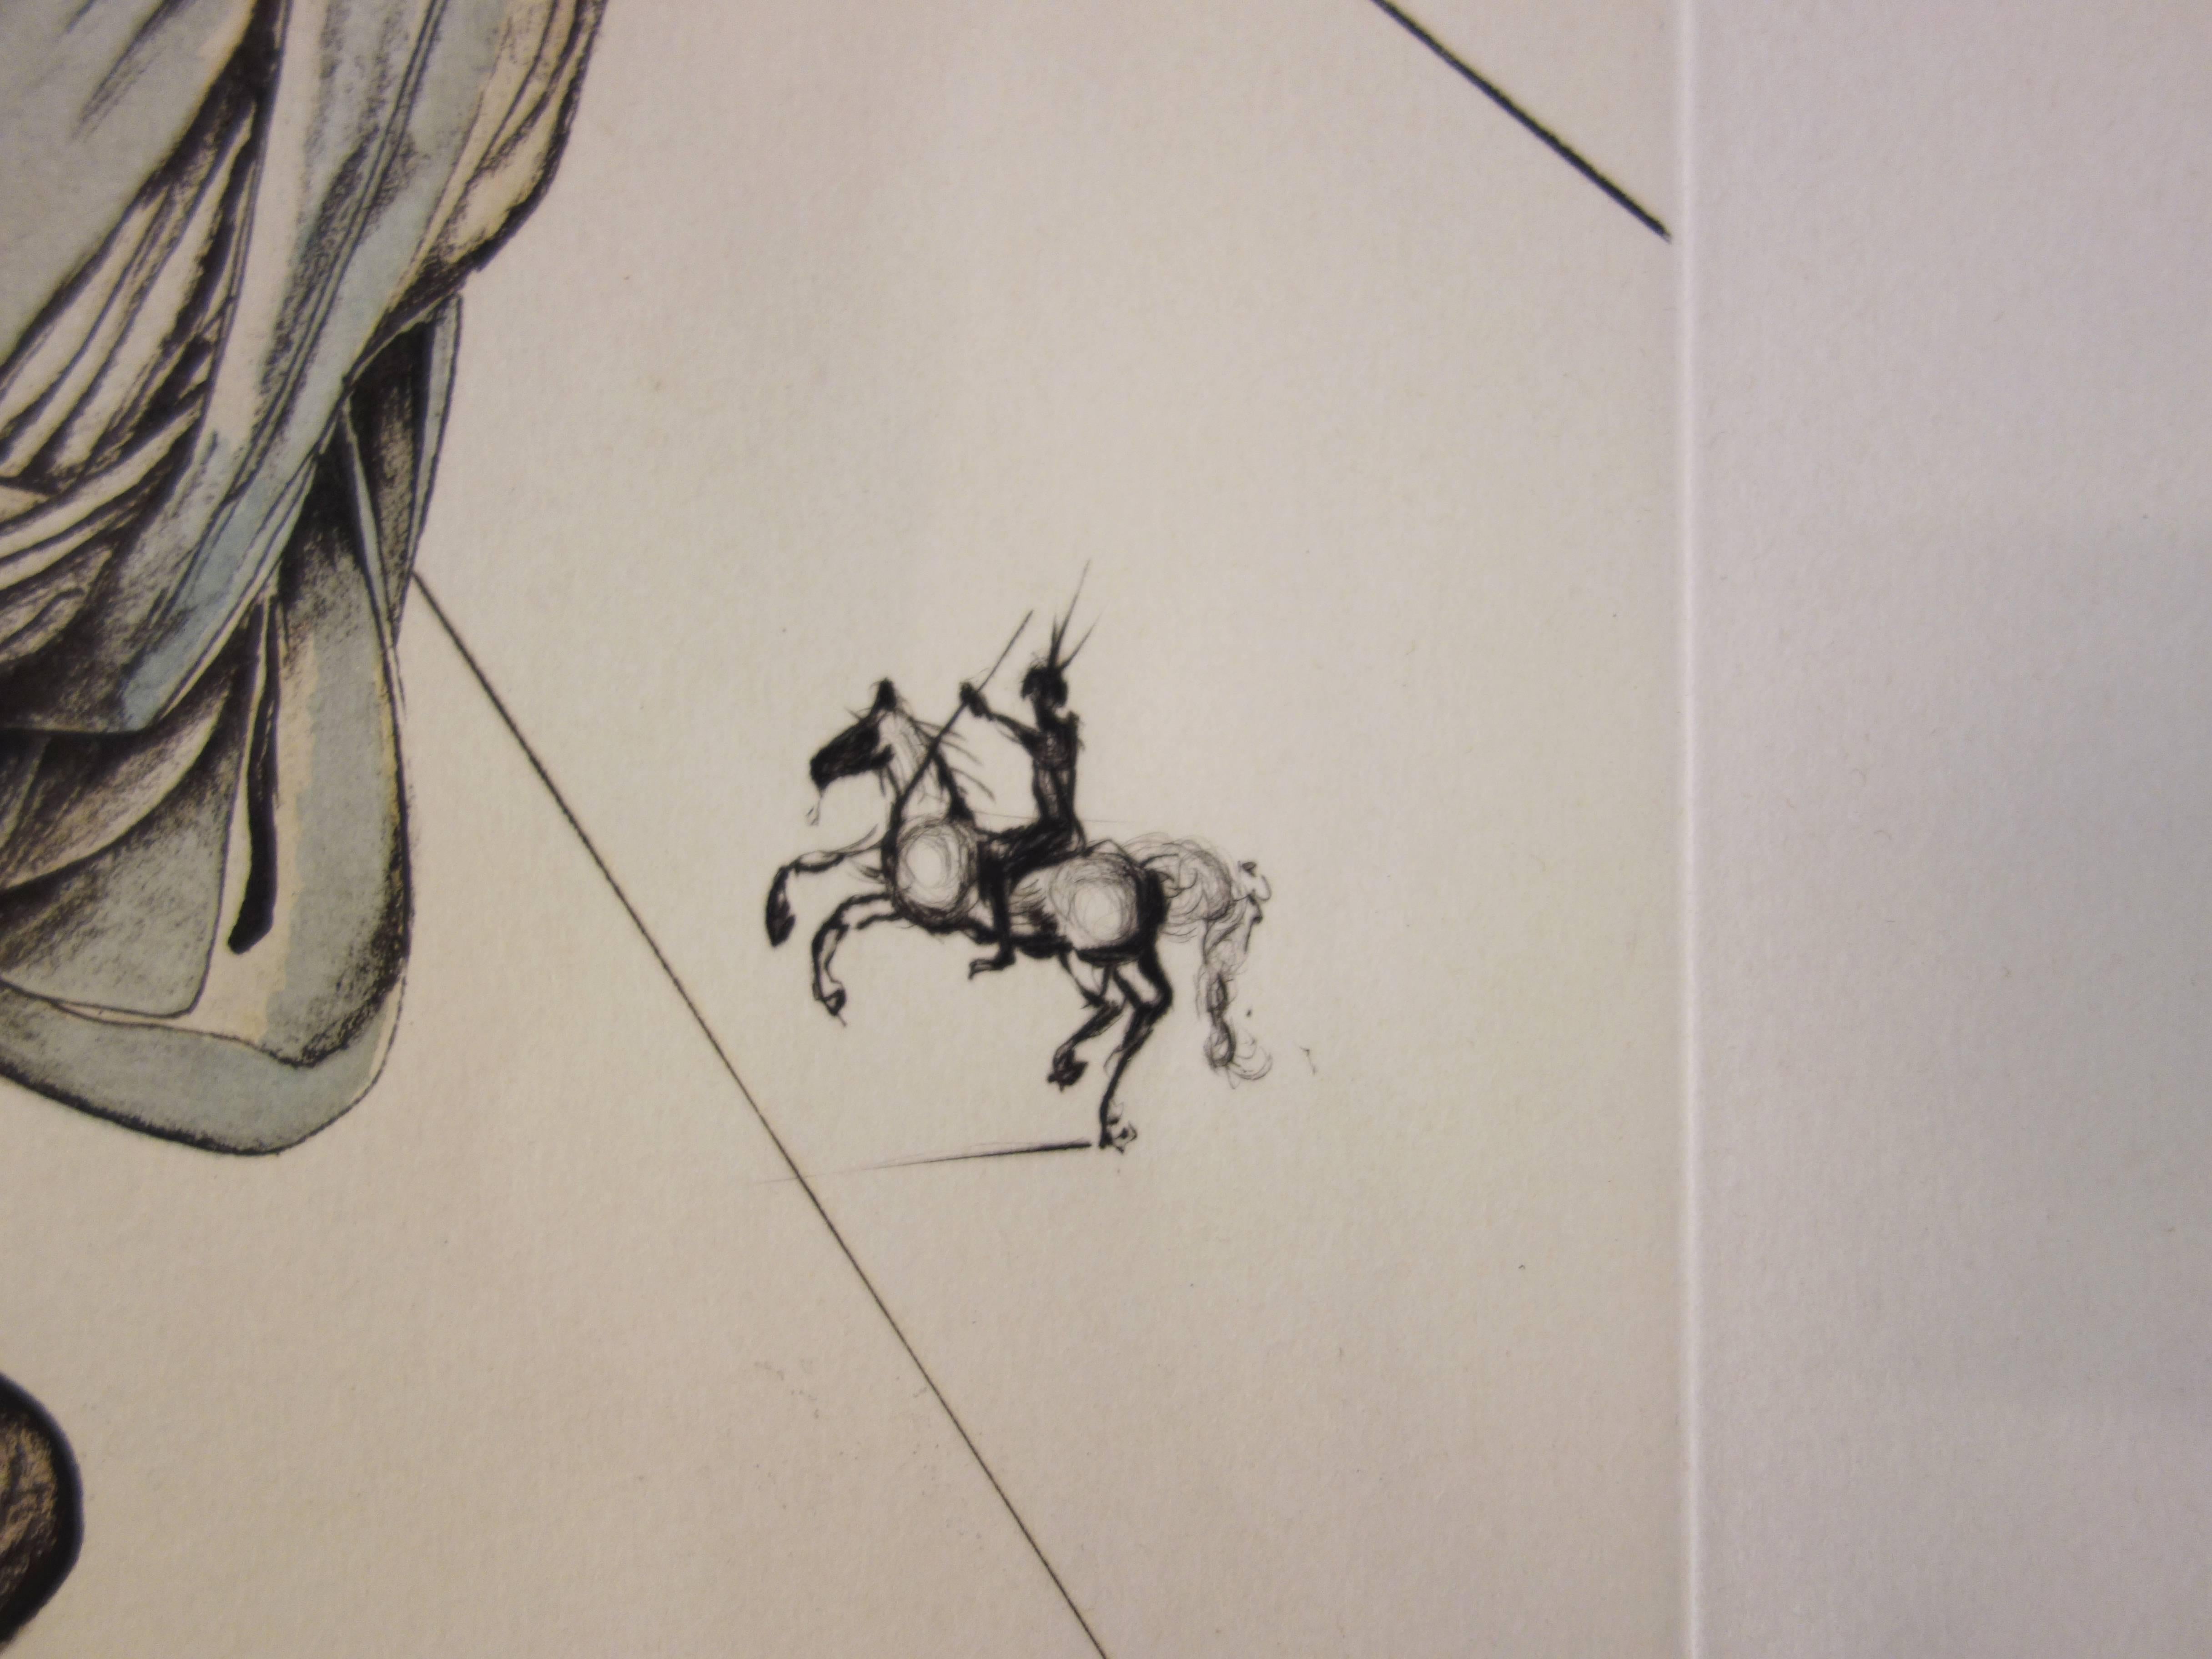 Général de Gaulle - Original etching and pochoir - 1974 - Artist proof - Surrealist Print by Salvador Dalí